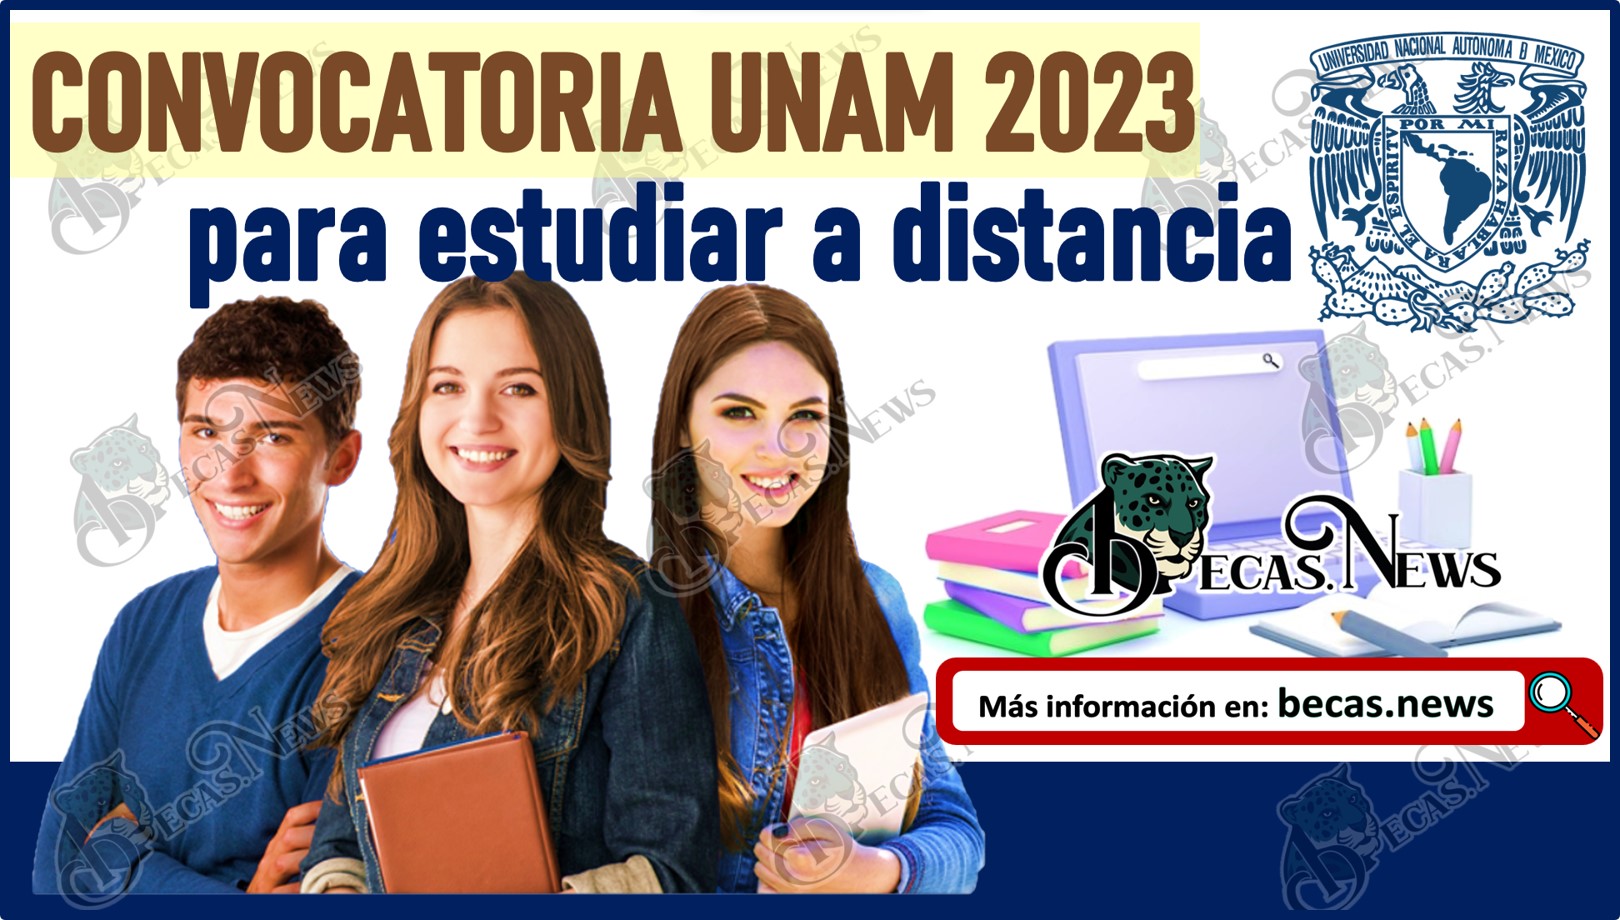 UNAM 2023 Nueva Convocatoria Para Estudiar A Distancia En La UNAM 🥇